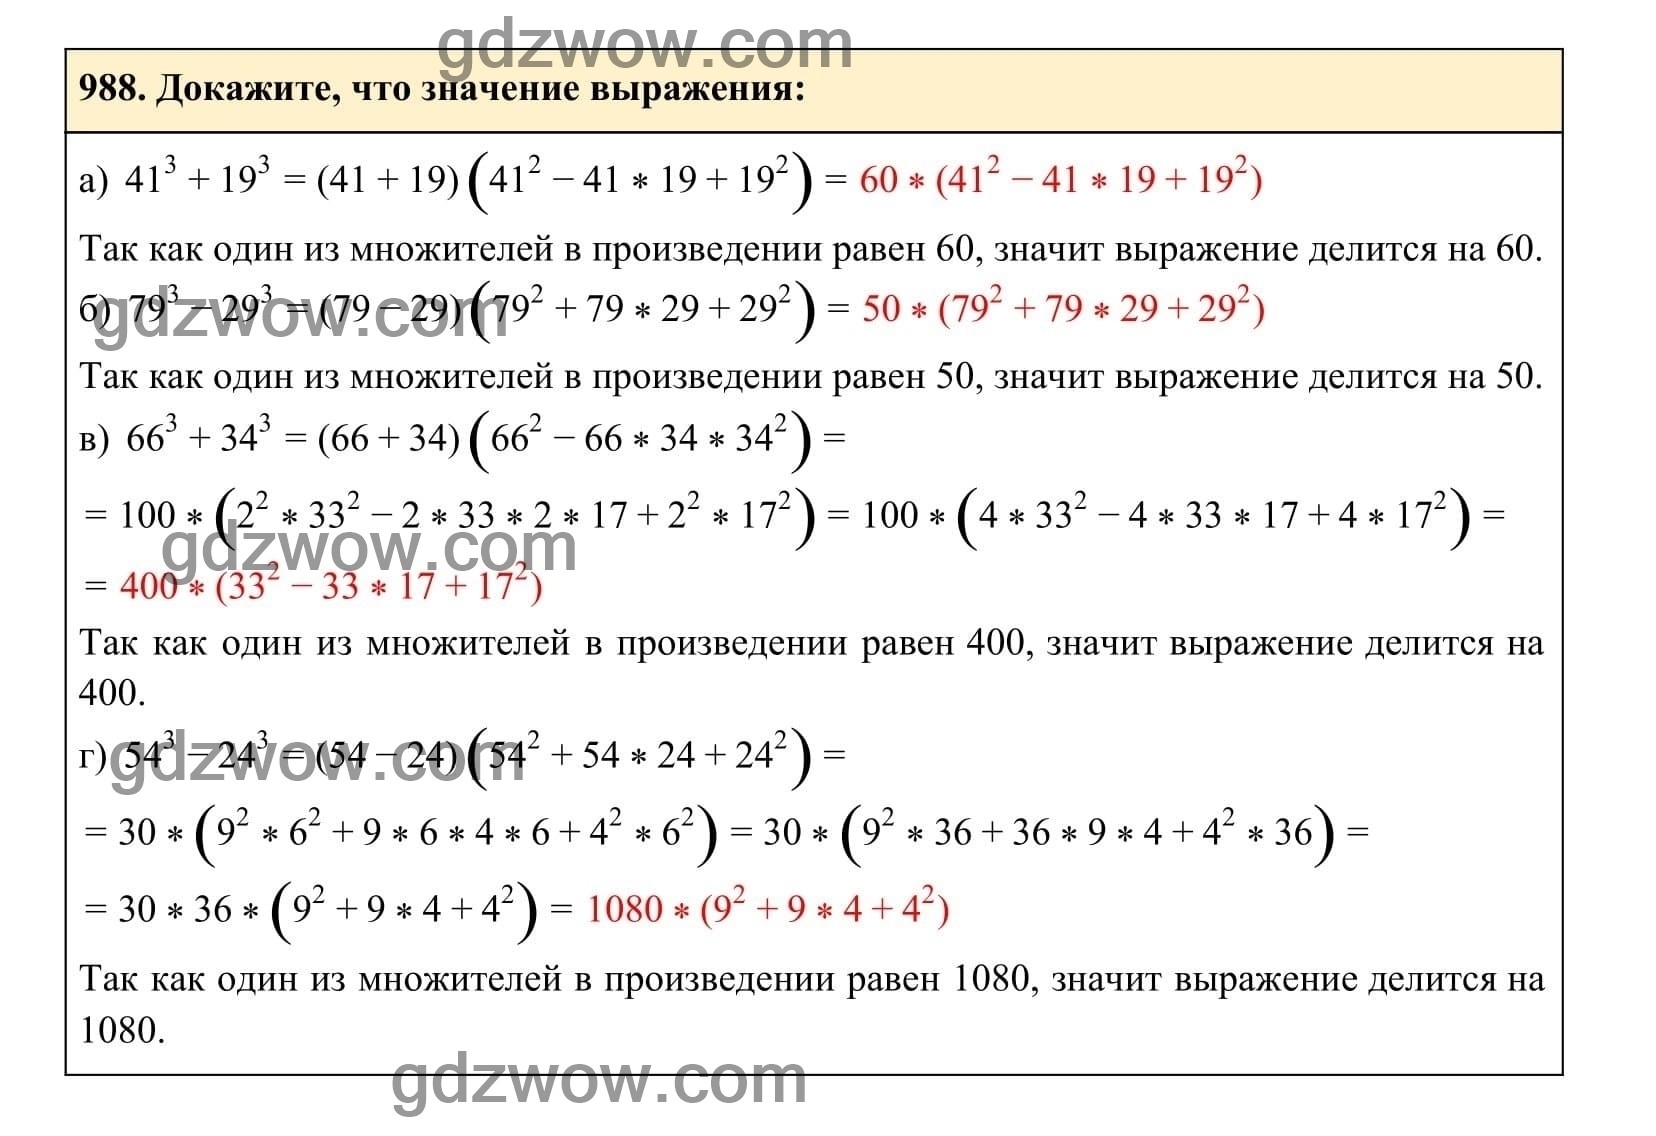 Упражнение 988 - ГДЗ по Алгебре 7 класс Учебник Макарычев (решебник) - GDZwow